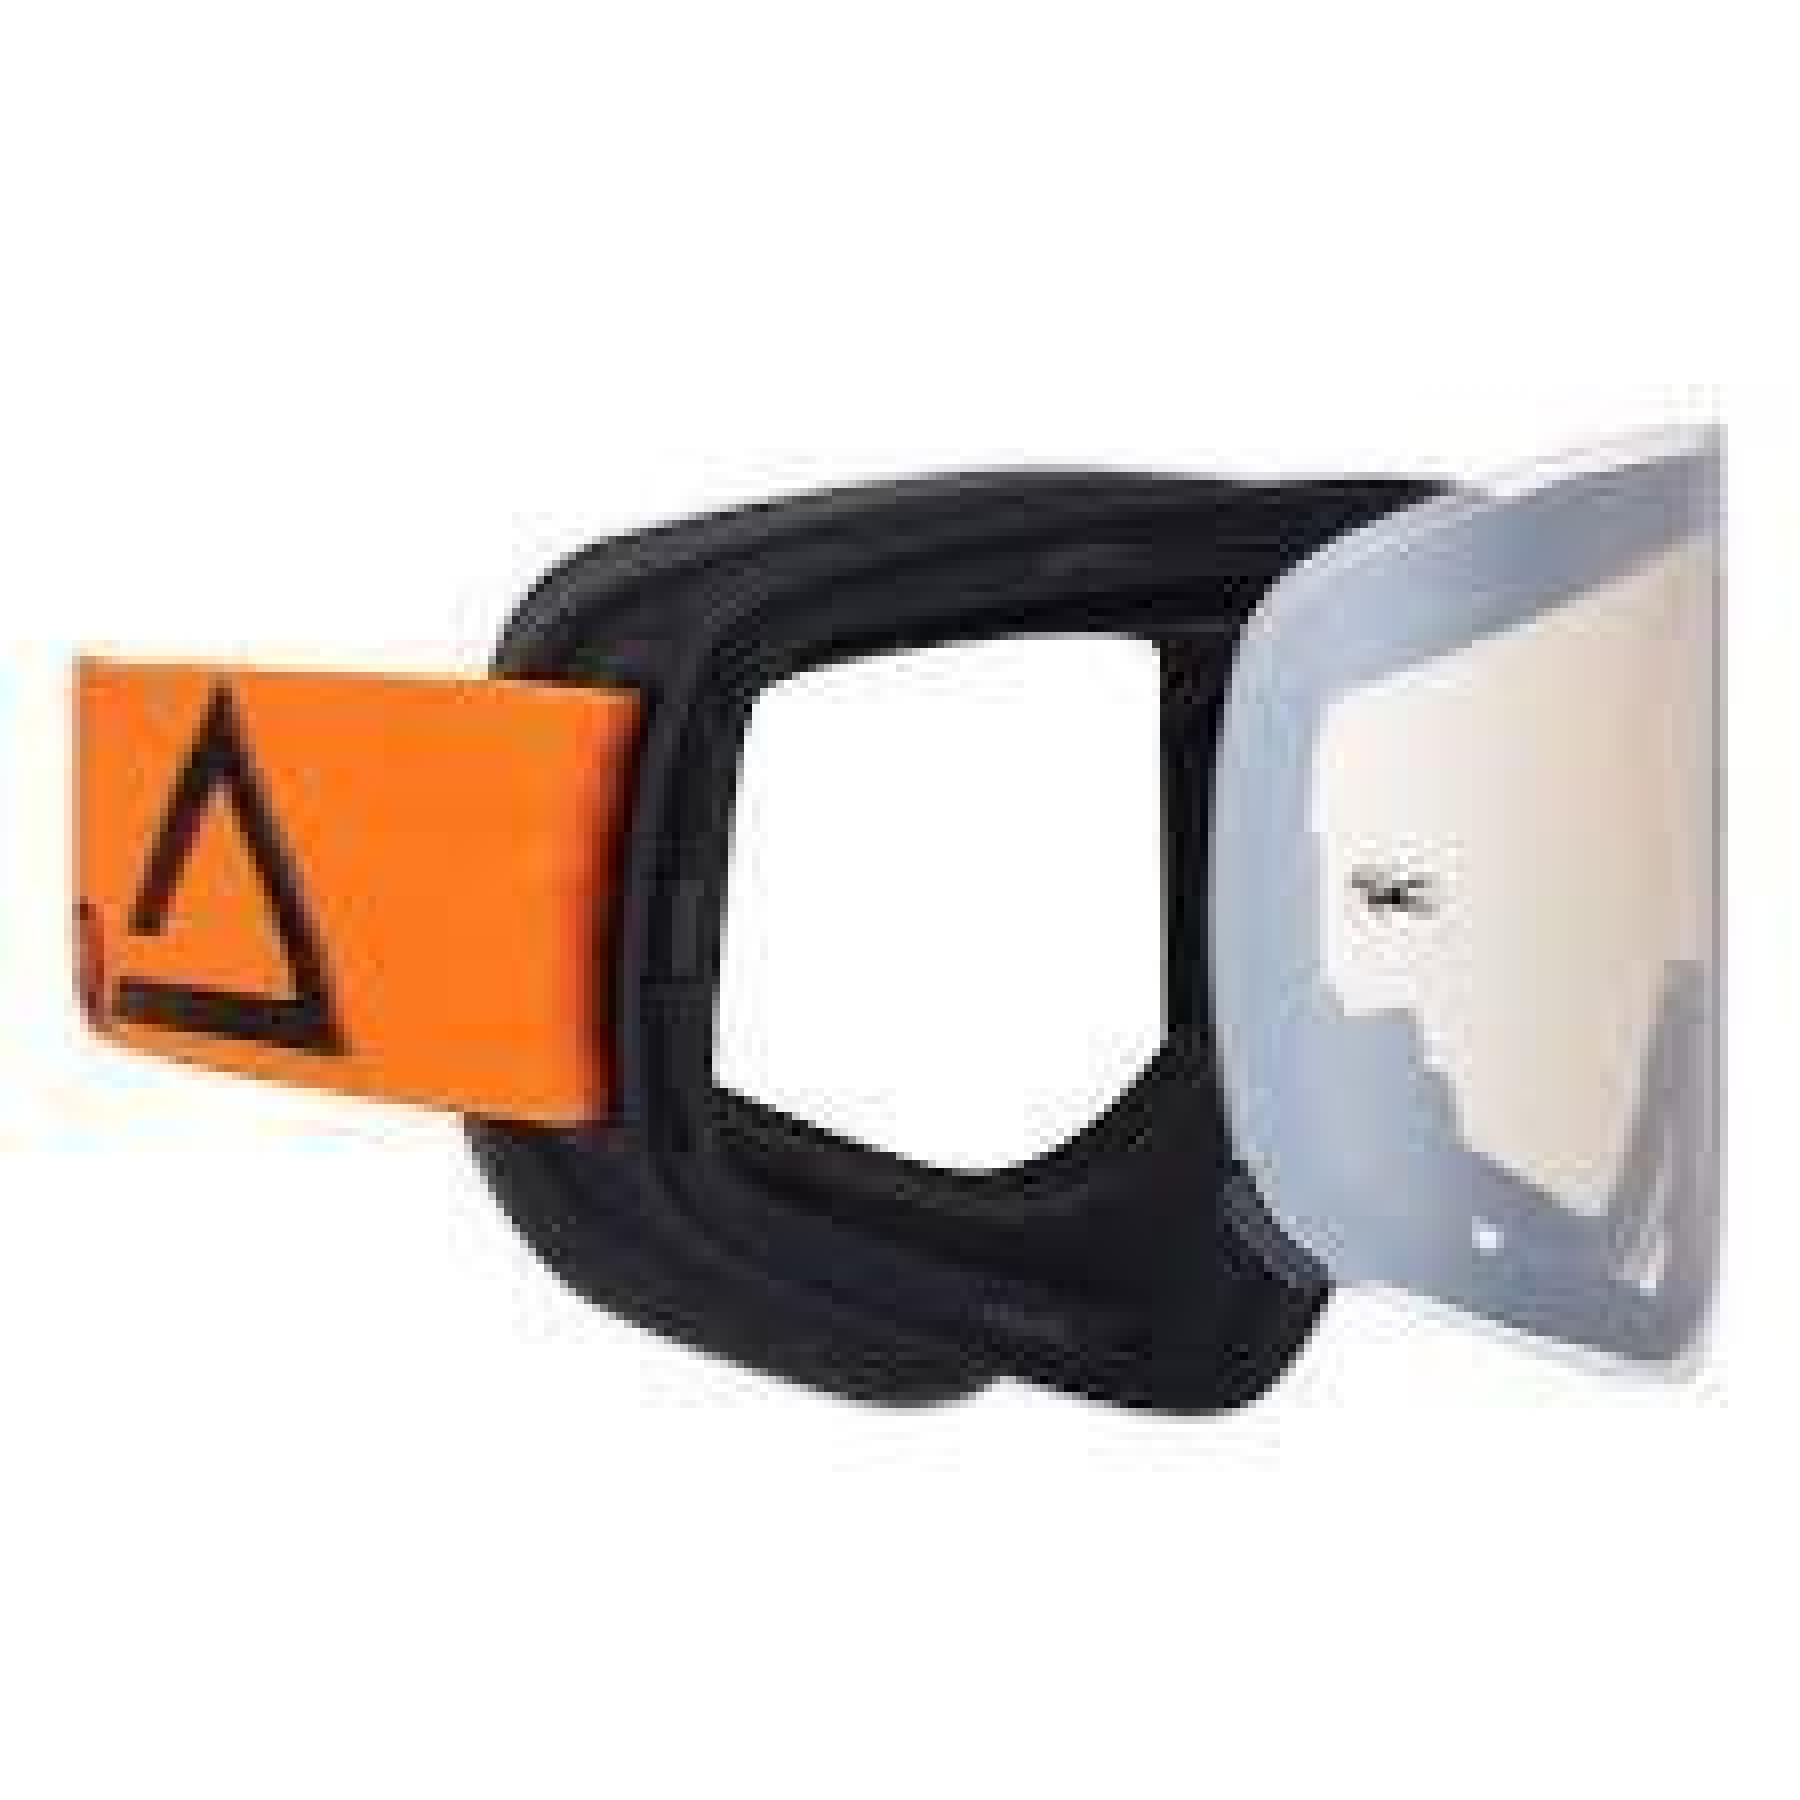 Óculos cruzados de motocicleta com lentes espelhadas de prata Amoq Vision Magnetic